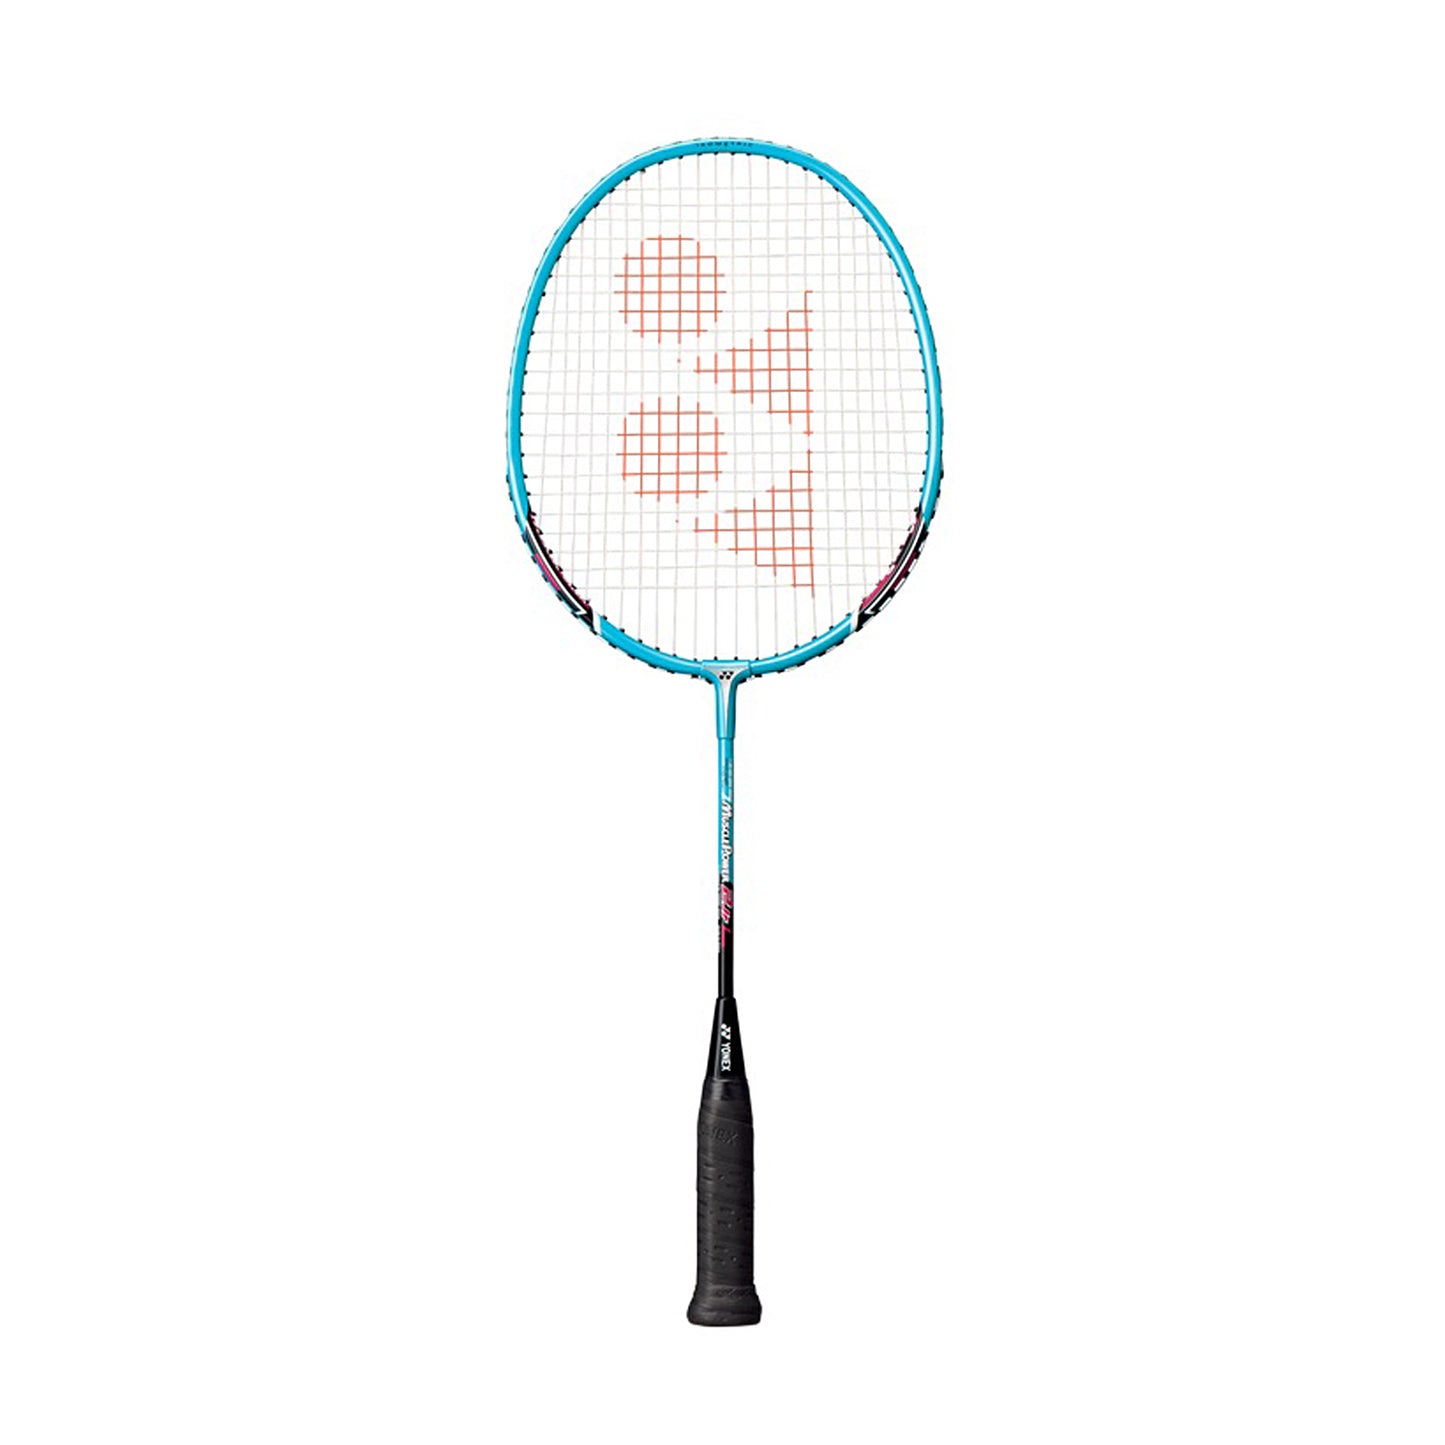 Yonex Muscle Power 2 Junior Strung Badminton Racquet, 4U5 - Light Blue - Best Price online Prokicksports.com